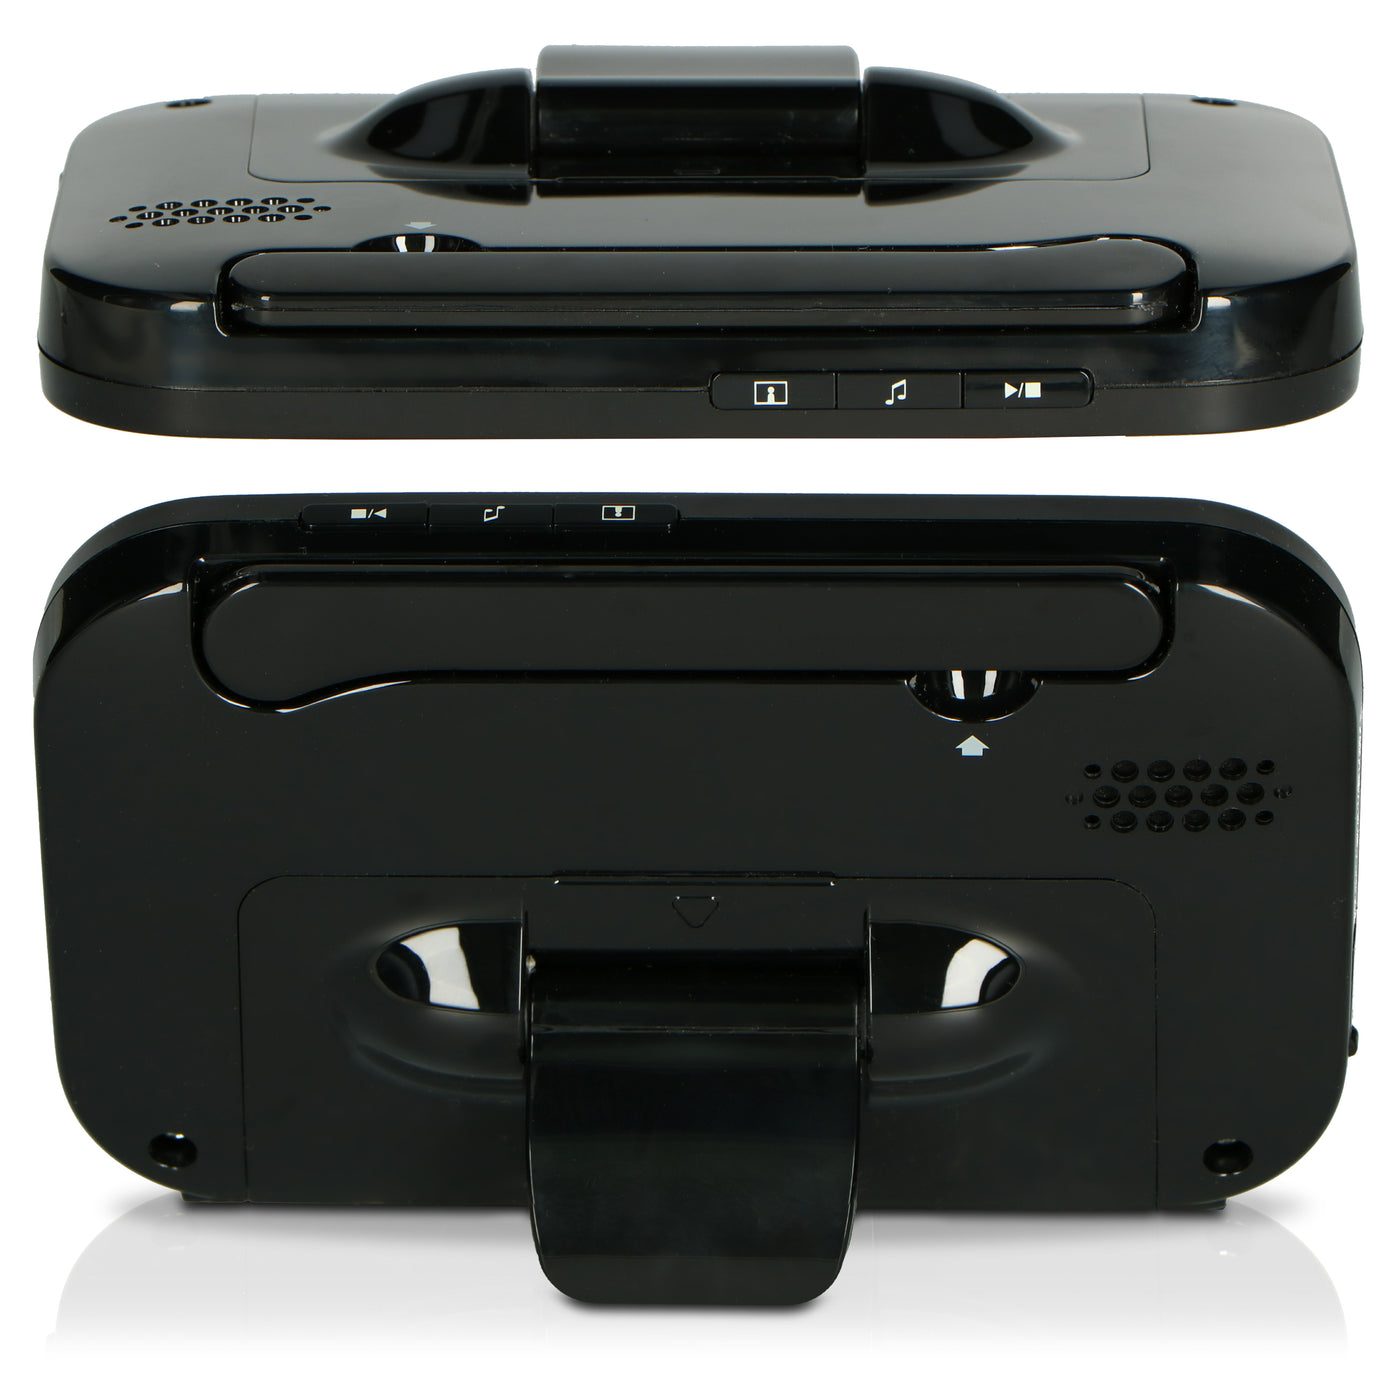 Alecto DVM200MBK - Babyfoon met camera en 4.3" kleurenscherm, zwart